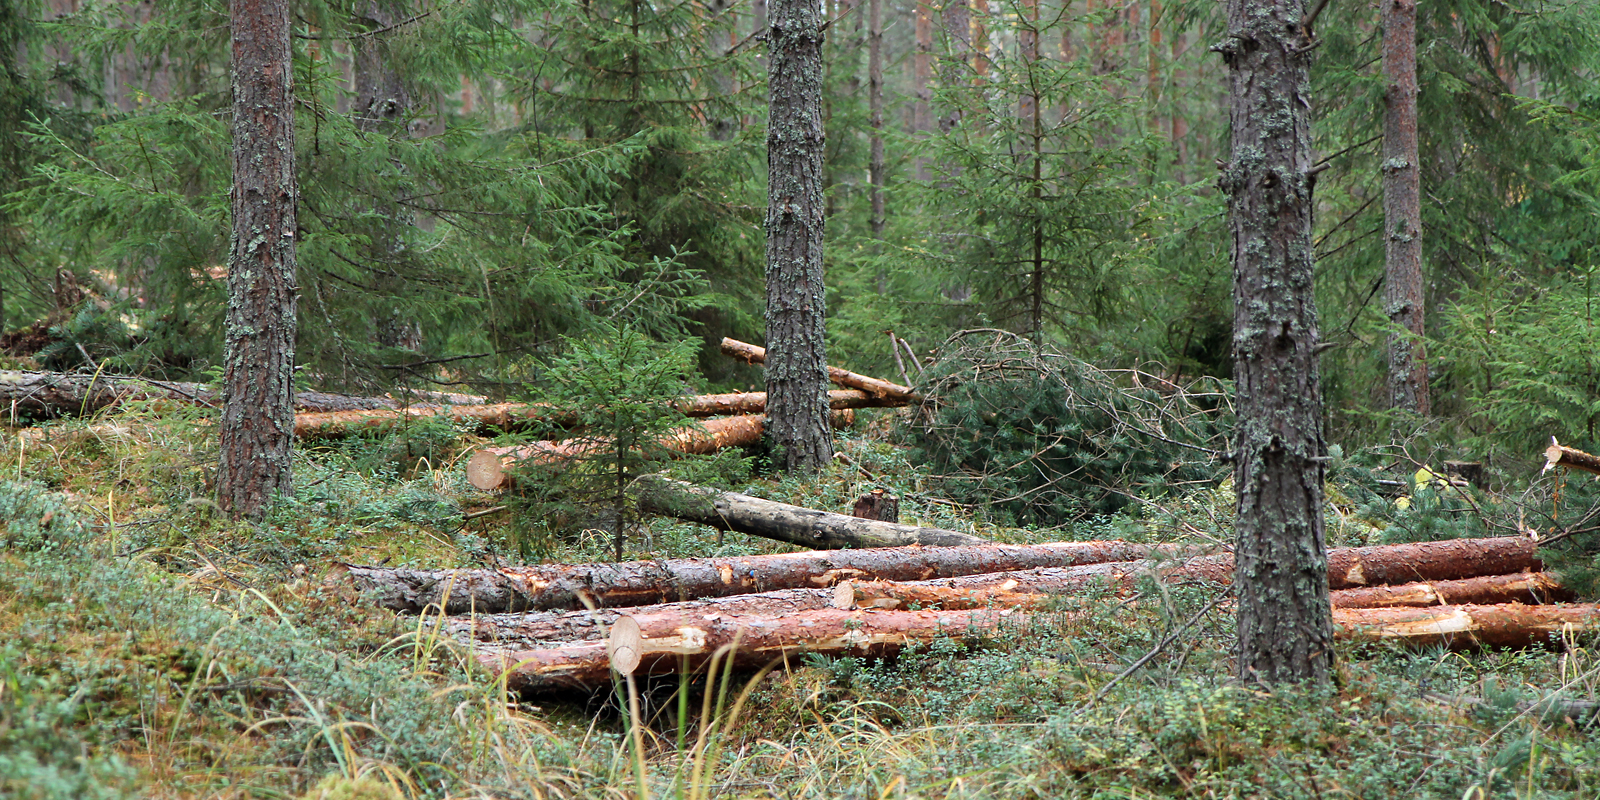 Jos Euroopan komission suunnitelma siirtyä jatkuvaan kasvatukseen kaikissa talousmetsissä toteutuu, se merkitsee suuria haasteita puunhankinnalle, mikäli hakkuukertymät halutaan pitää ennallaan